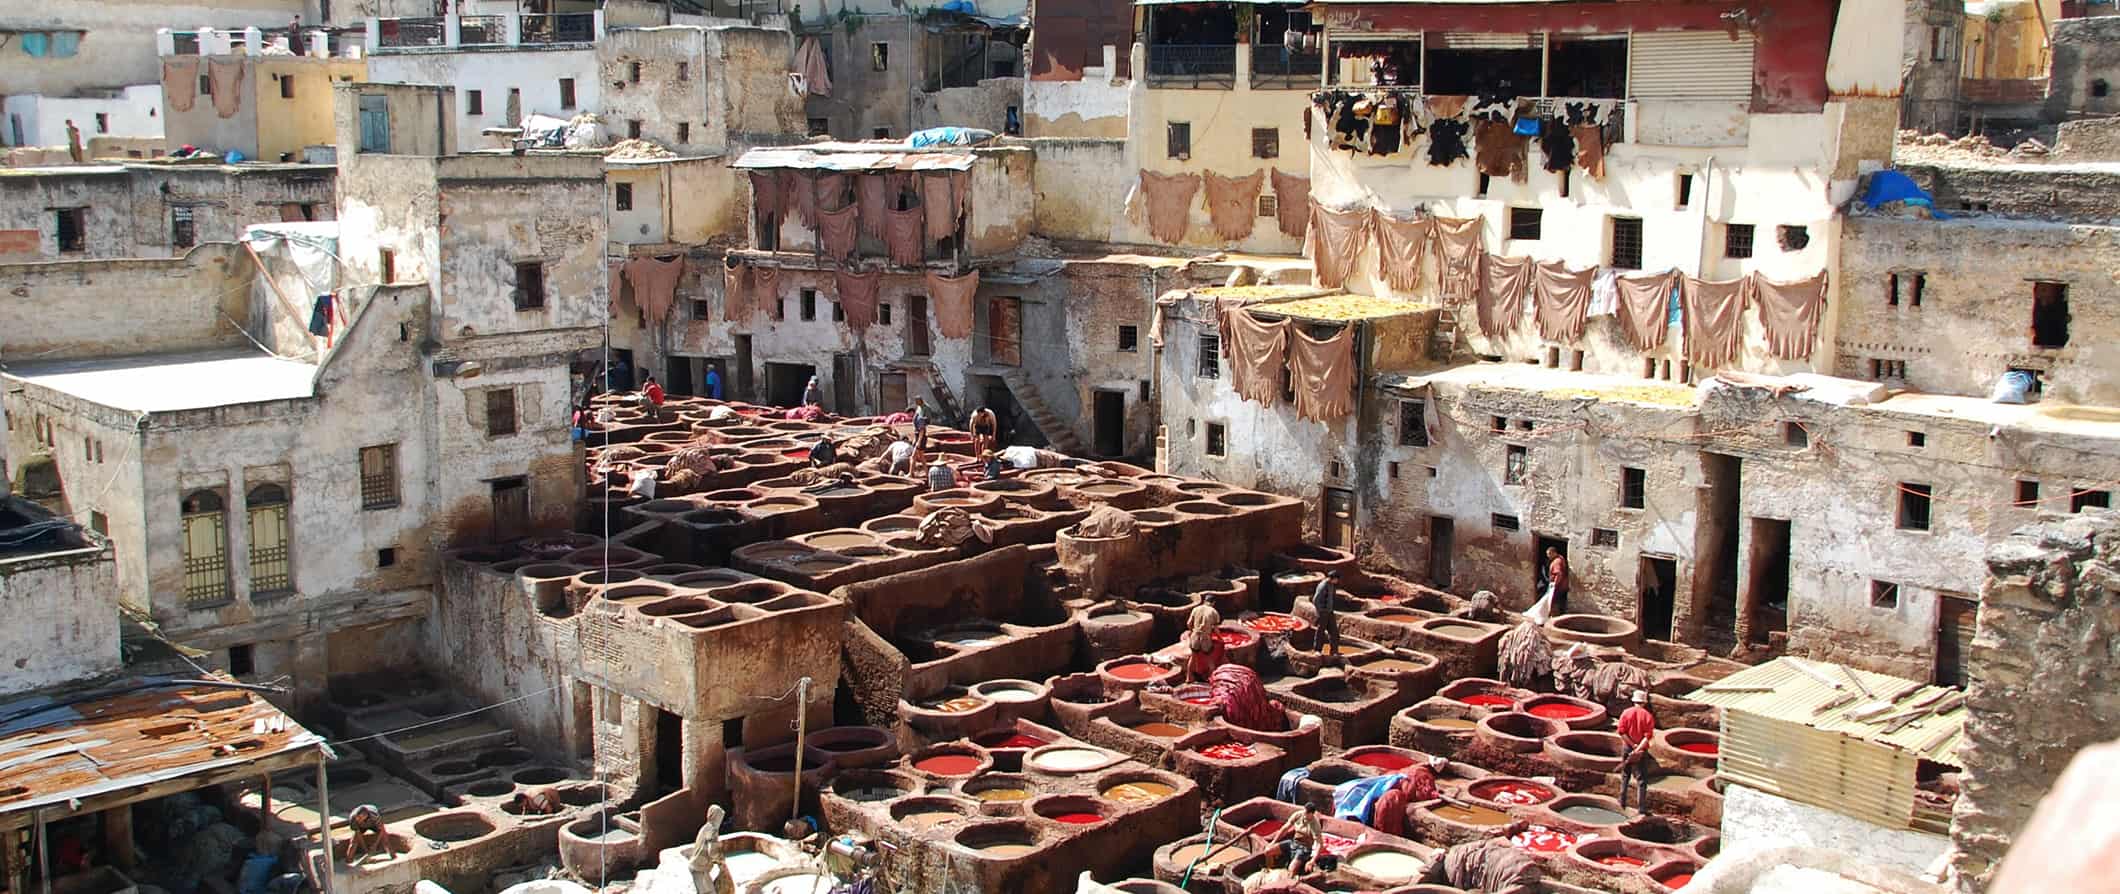 Enorme curtume histórico em Fez, rodeado por antigas casas e edifícios tradicionais marroquinos